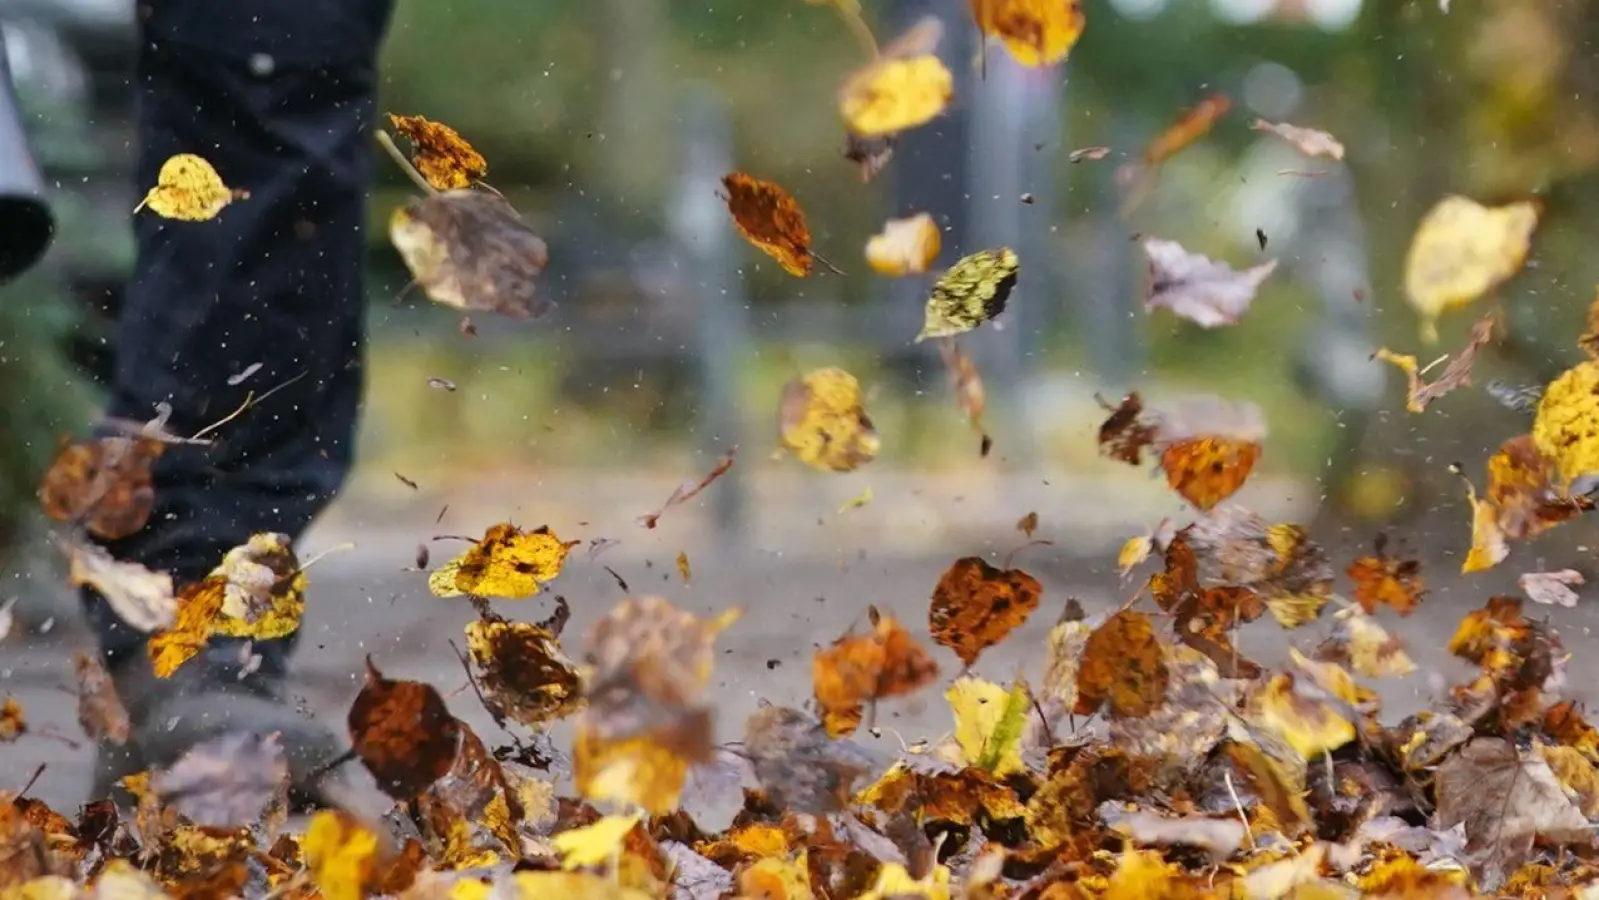 Kampf gegen das Herbstlaub: Laubbläser sind praktische Helfer - aber nur, wenn sie sachgemäß und sicher bedient werden. (Foto: Marcus Brandt/dpa/dpa-tmn)